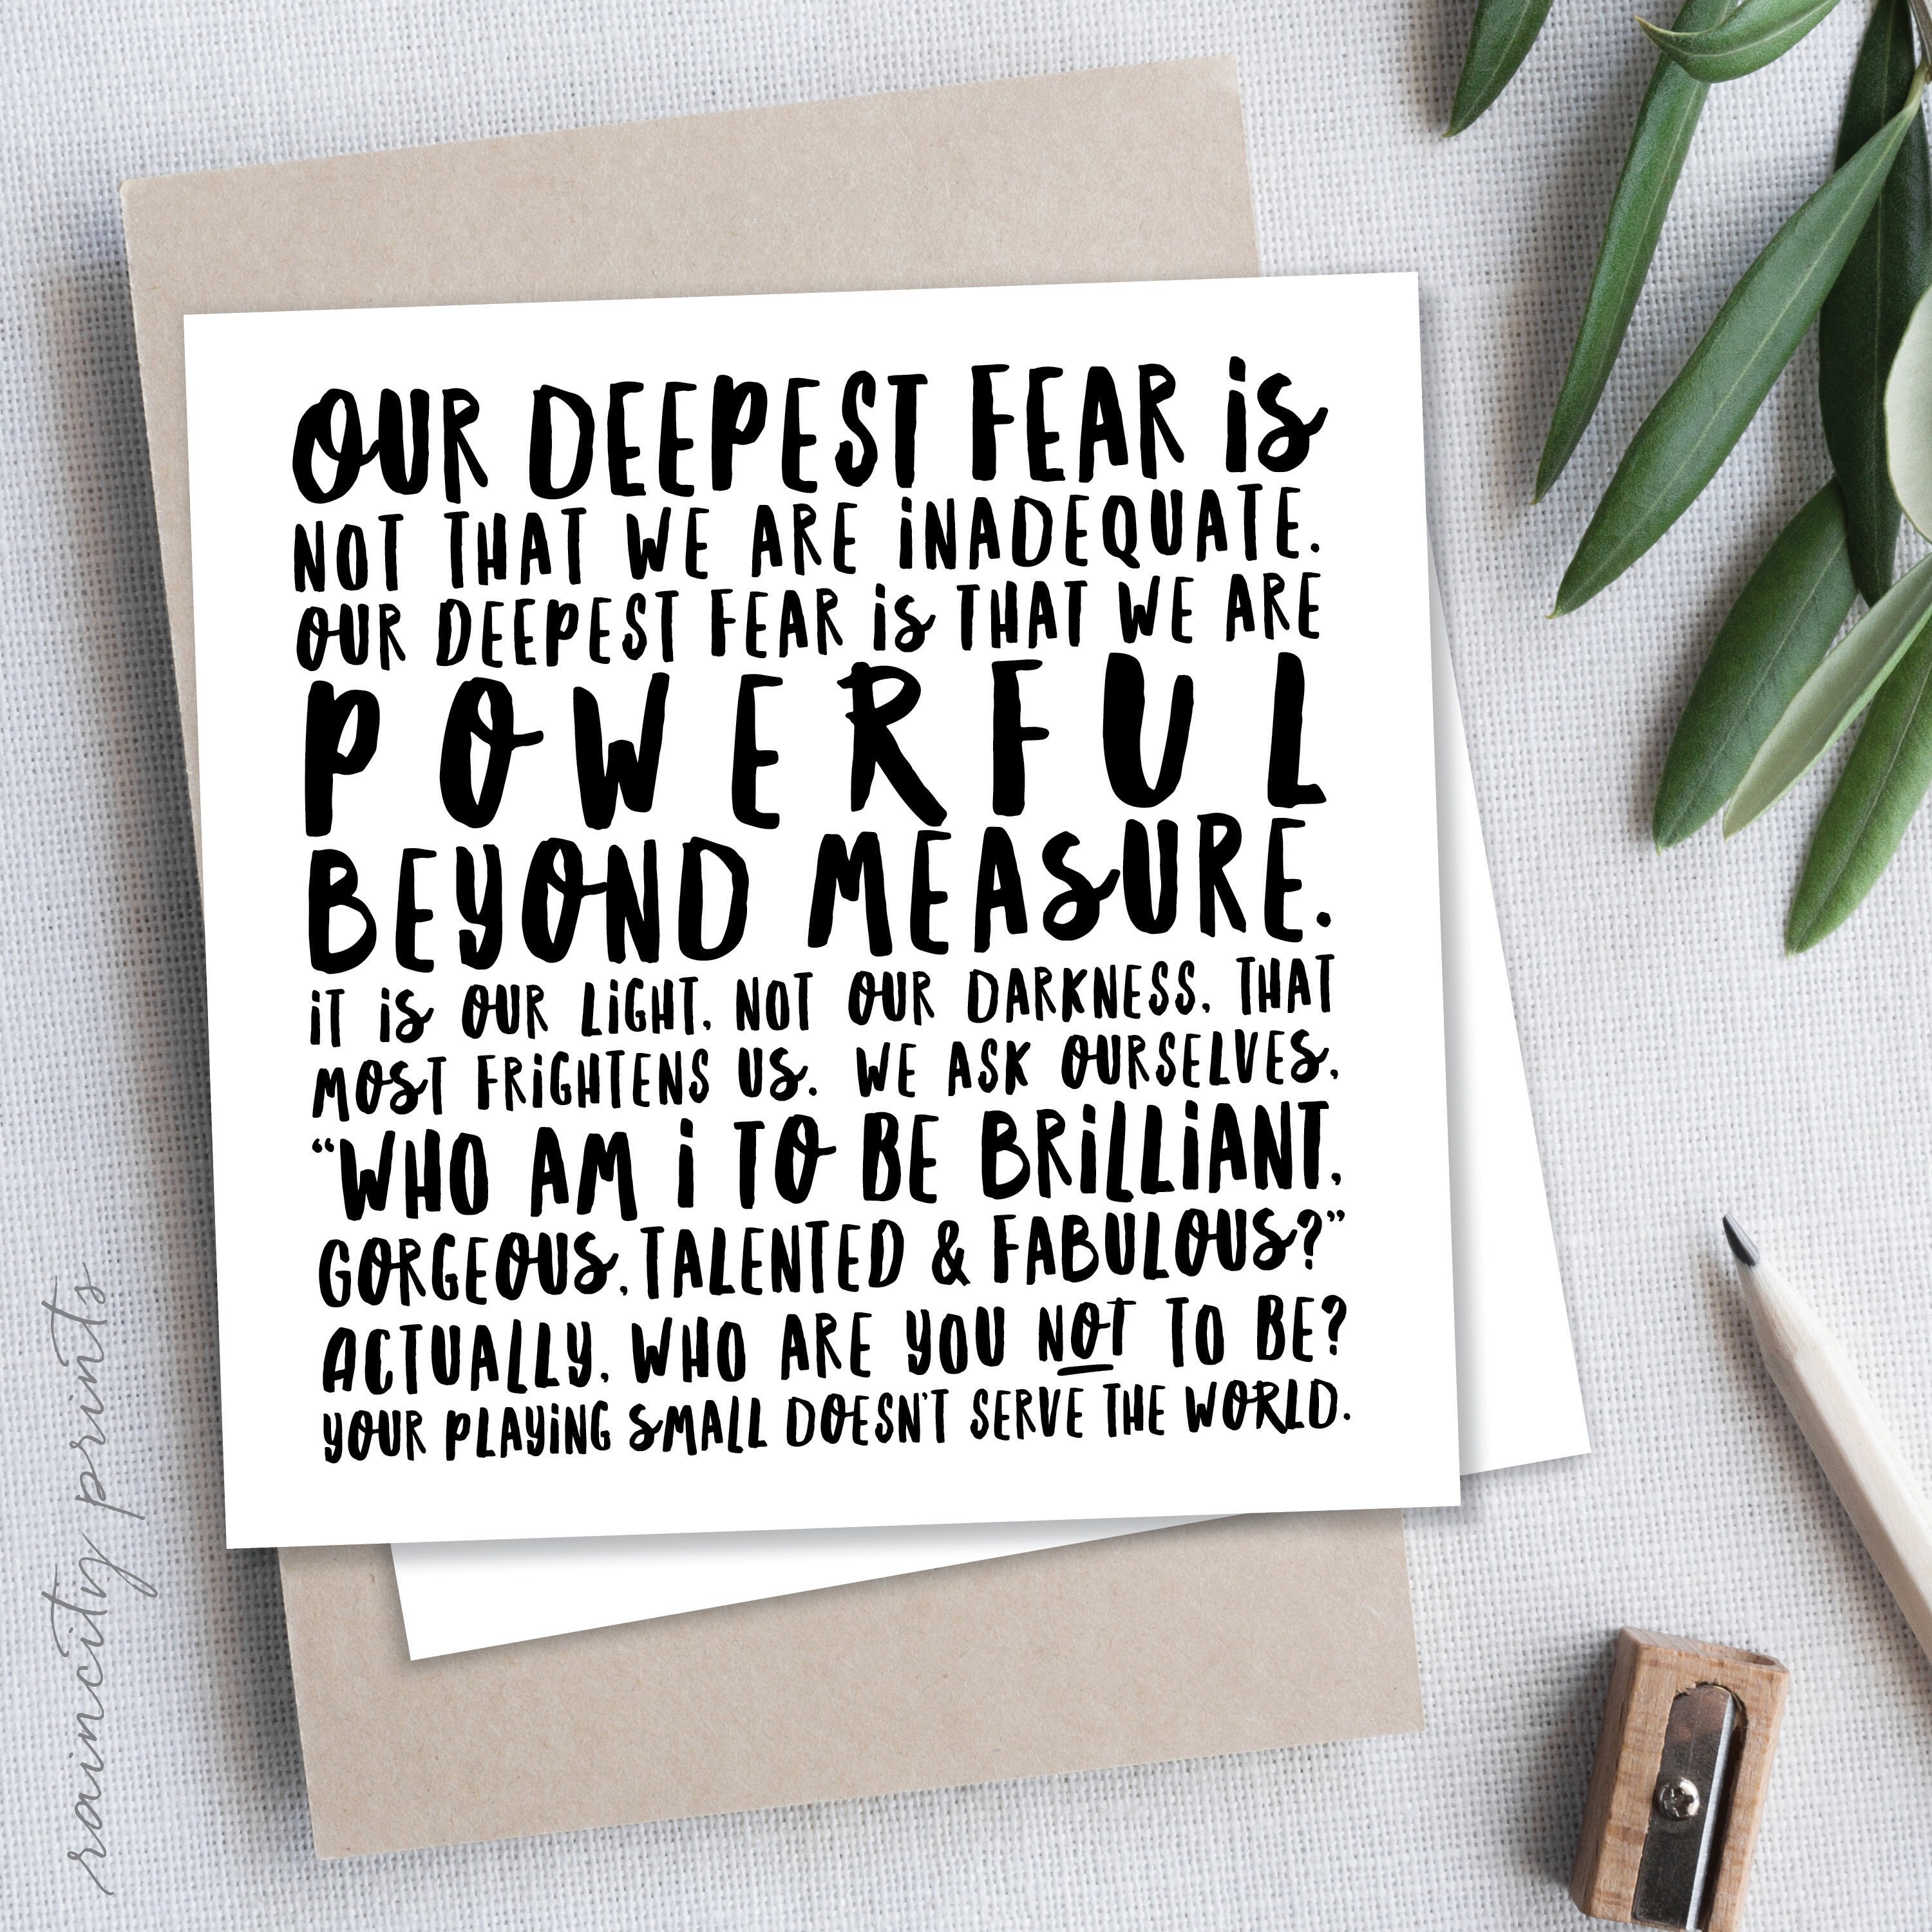 Our Greatest Fear poem iPad Case & Skin for Sale by czerinaart